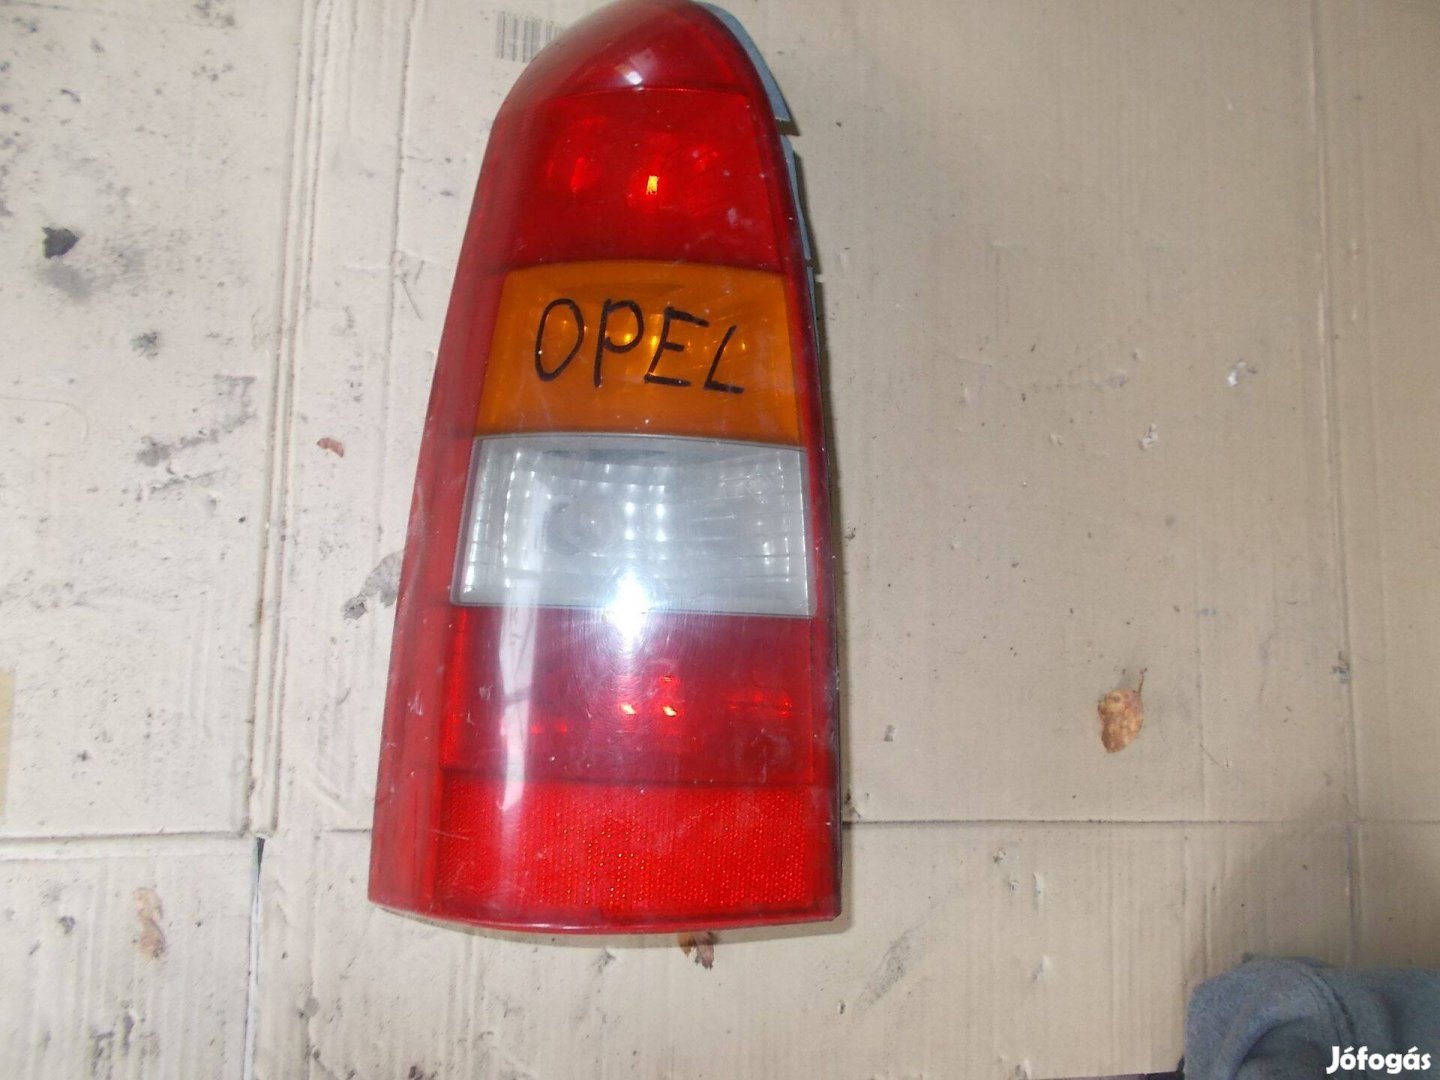 Eladó a képen látható opel bontott hátsó lámpa